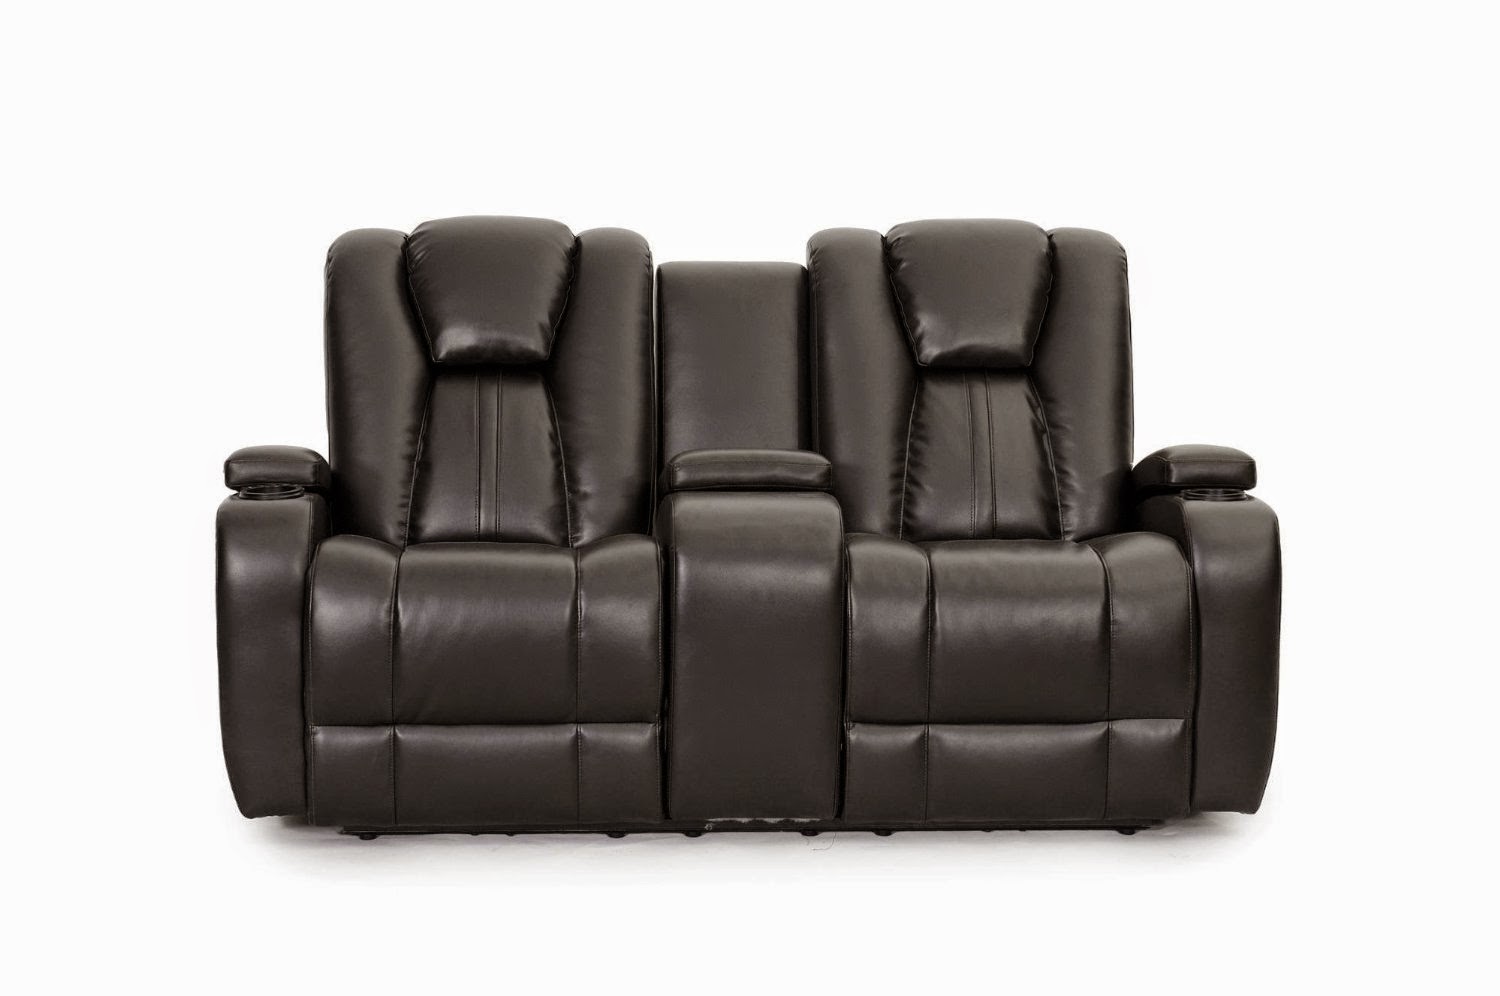 Sofa Recliner Reviews March 2015